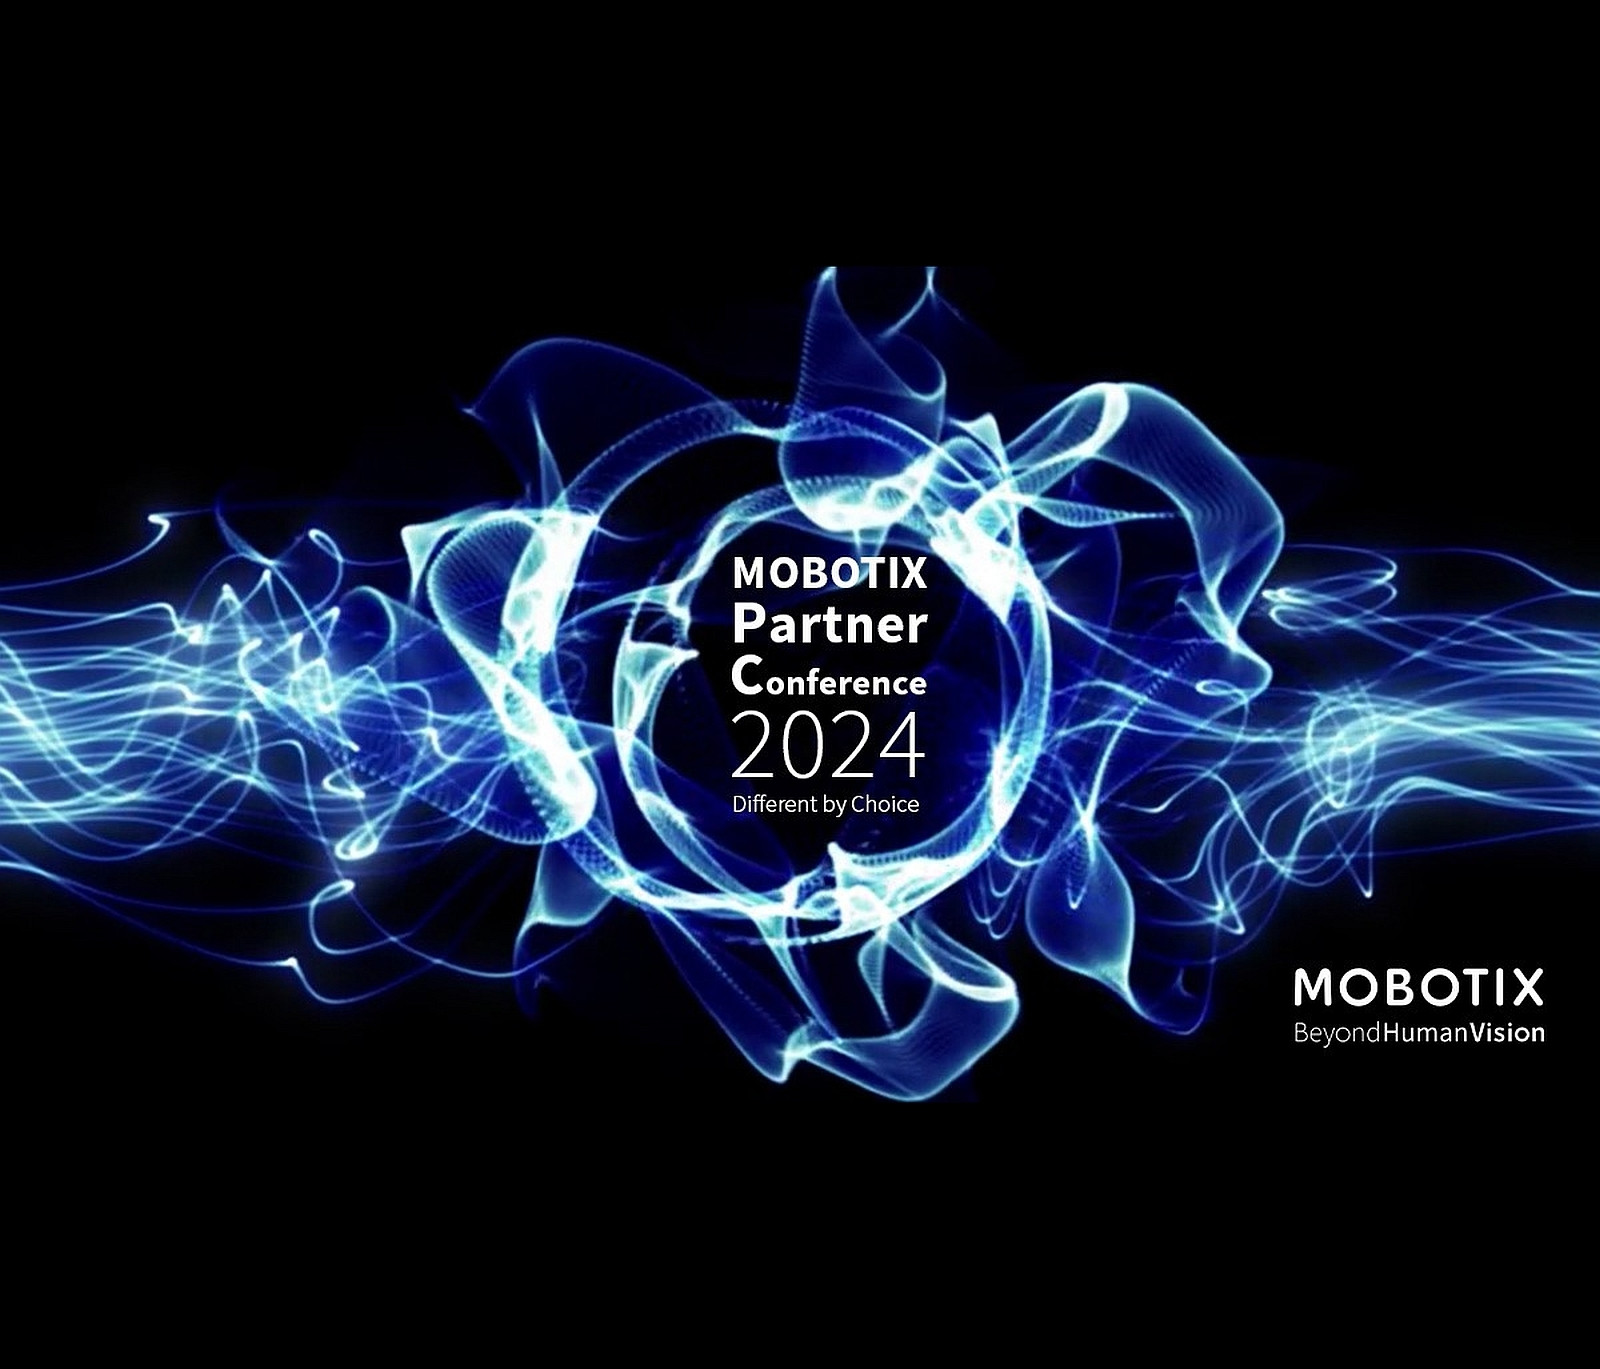 Mit vier individuellen Partnerkonferenzen auf drei Kontinenten investiert Mobotix in die Kommunikation mit seinen Partnern.